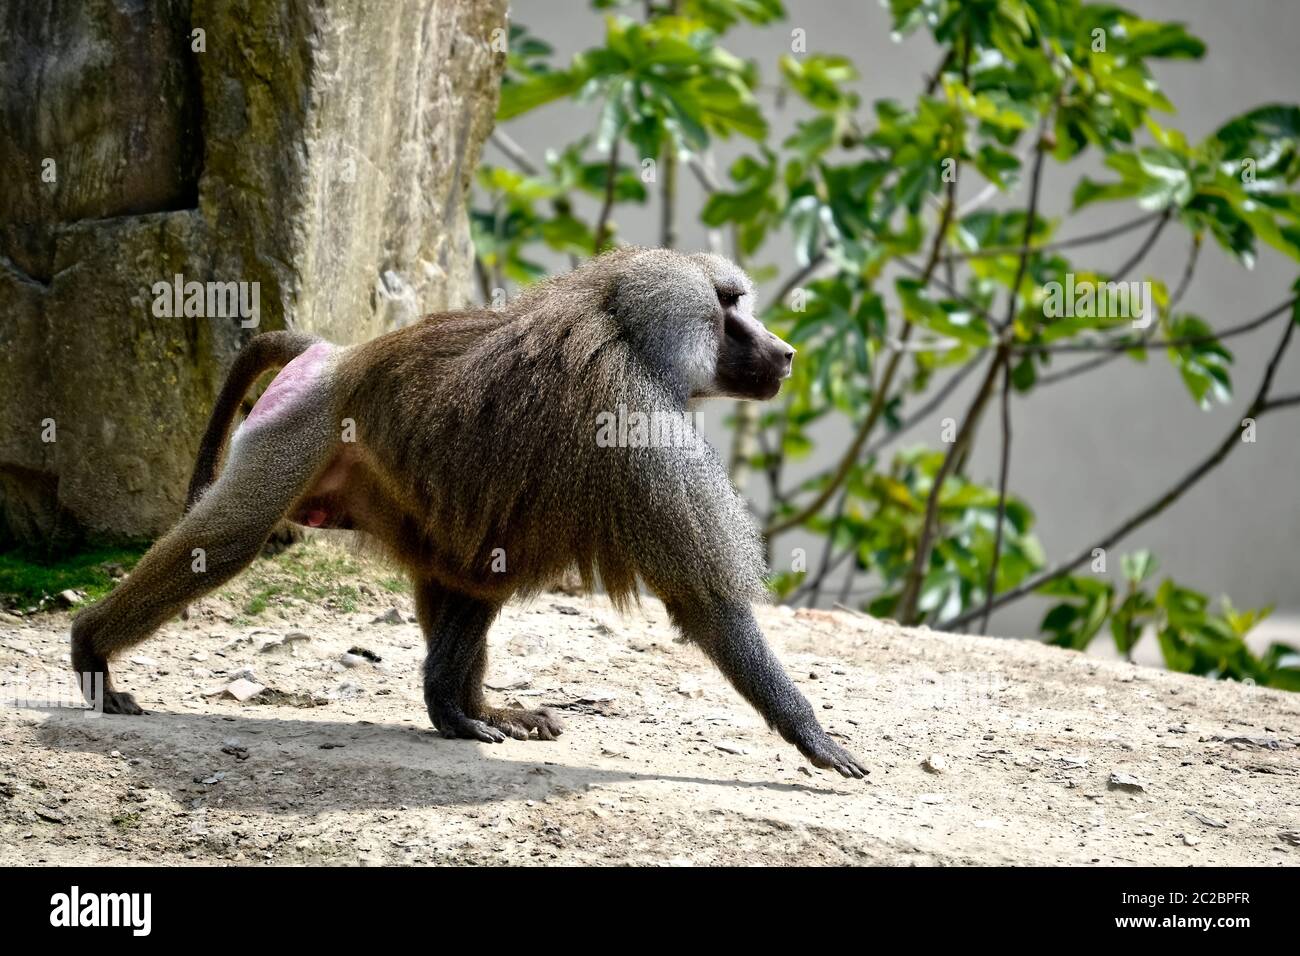 Le babouin Hamadryas (Papio hamadryas) marcher sur le sol et vu de profil Banque D'Images